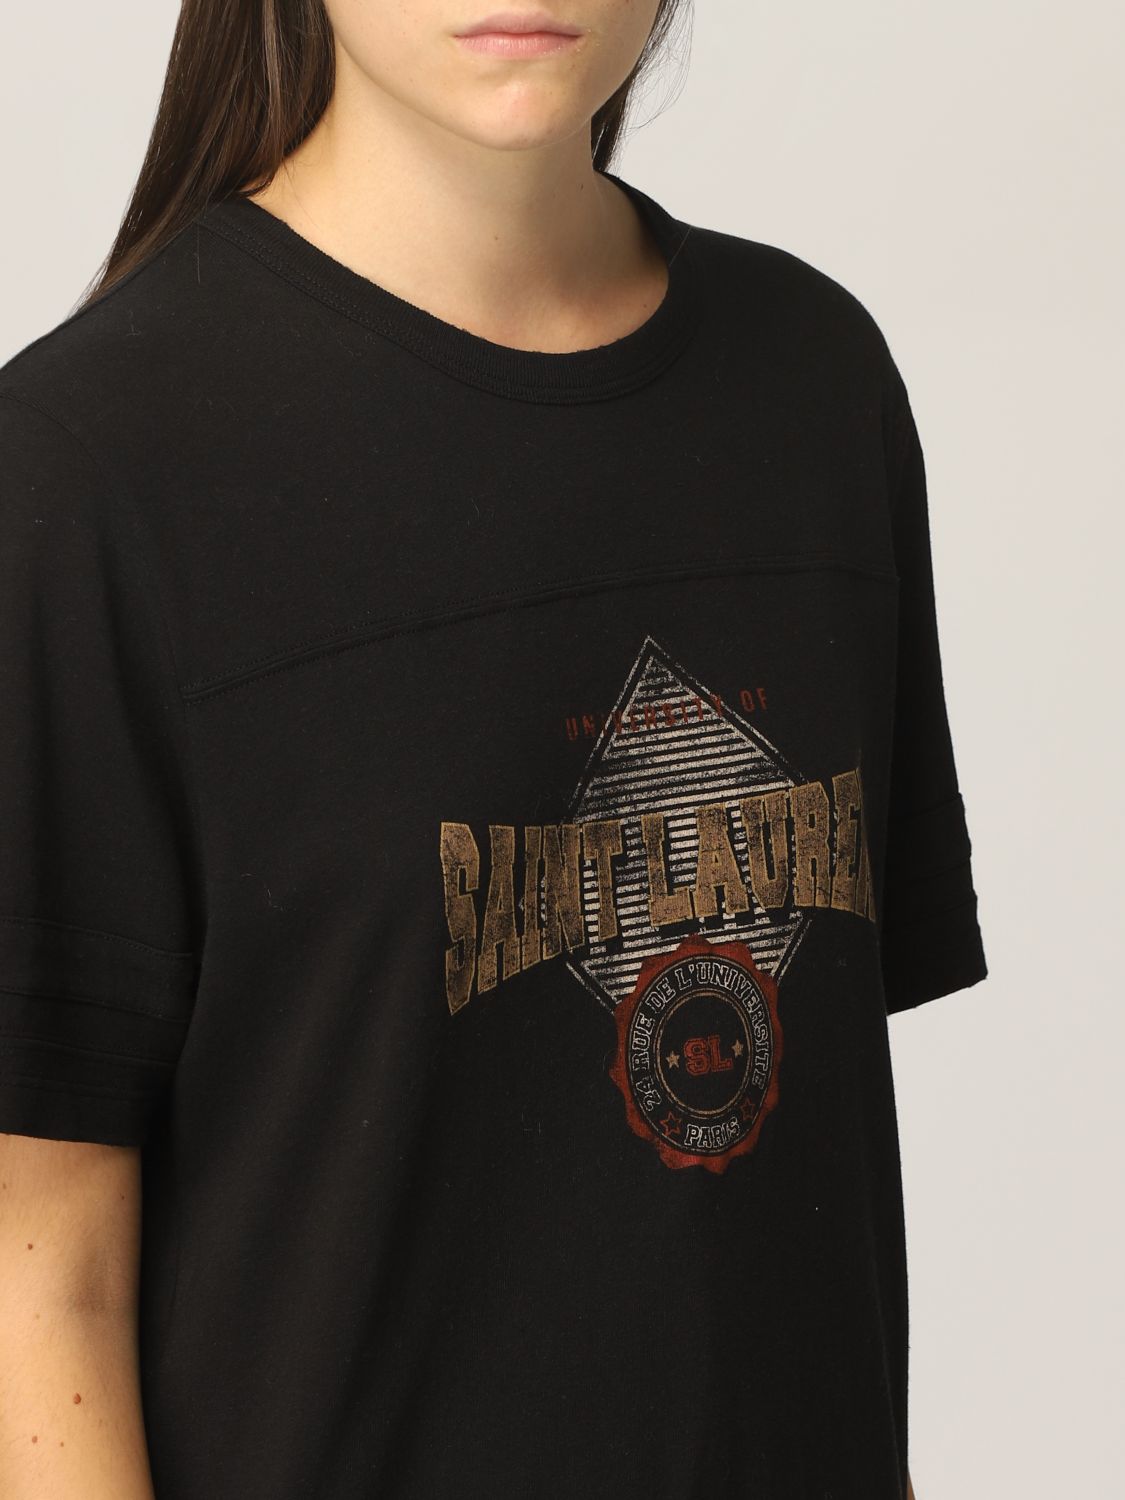 Camiseta Saint Laurent: Camiseta mujer Saint Laurent negro 5